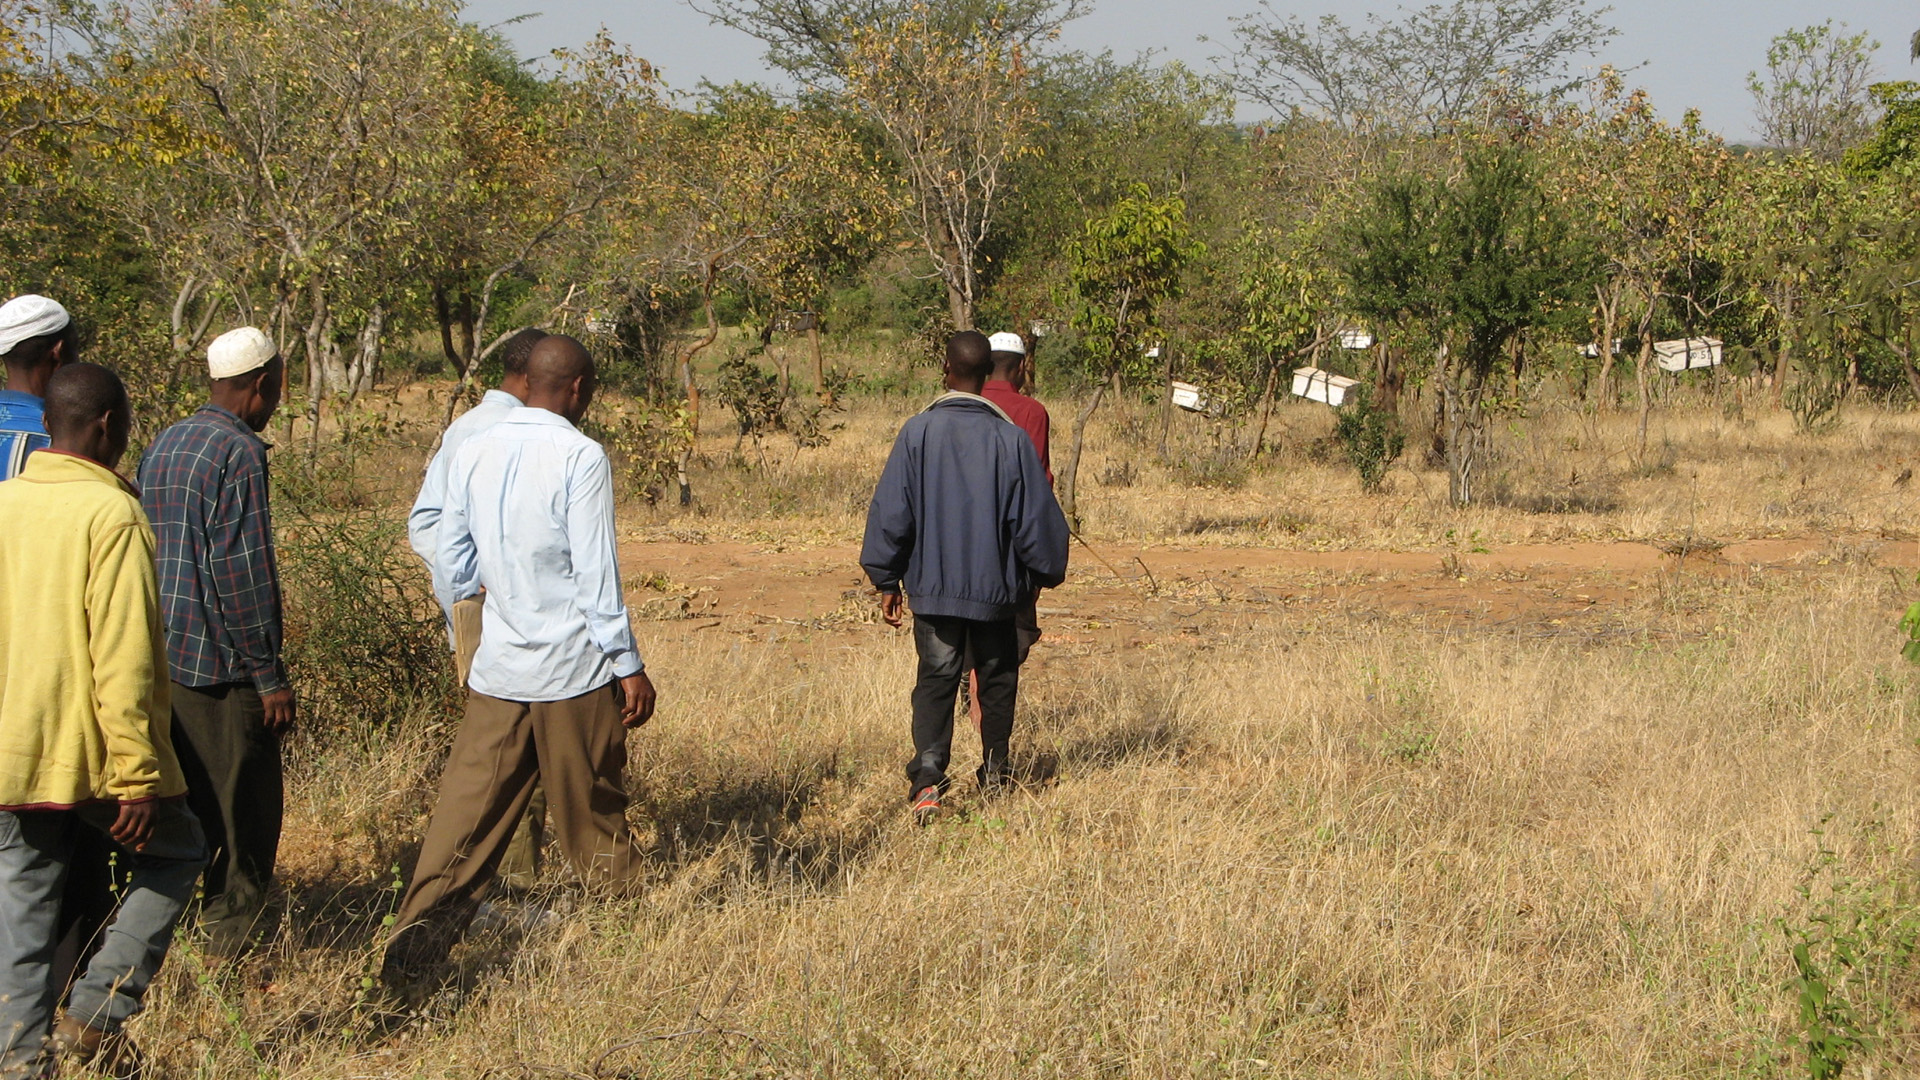 Zusammen mit seinem Team schaffte Rinaudo es, sieben Milionen Hektar Land wieder zu begrünen